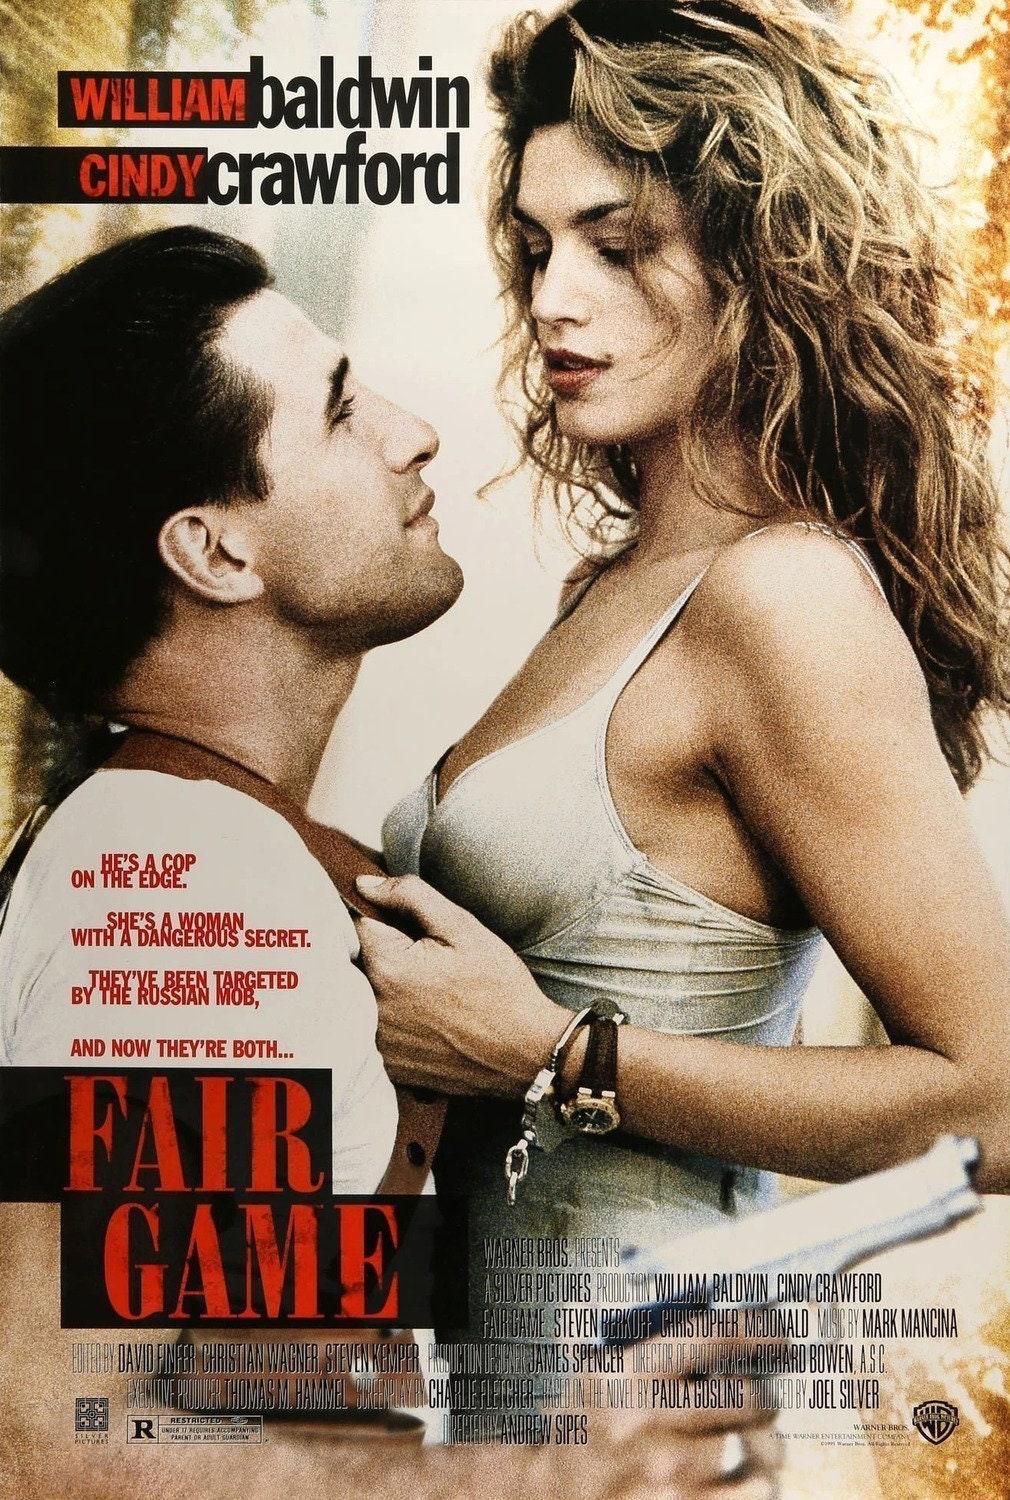 Fair Game (1995 film) Warner Bros foto foto